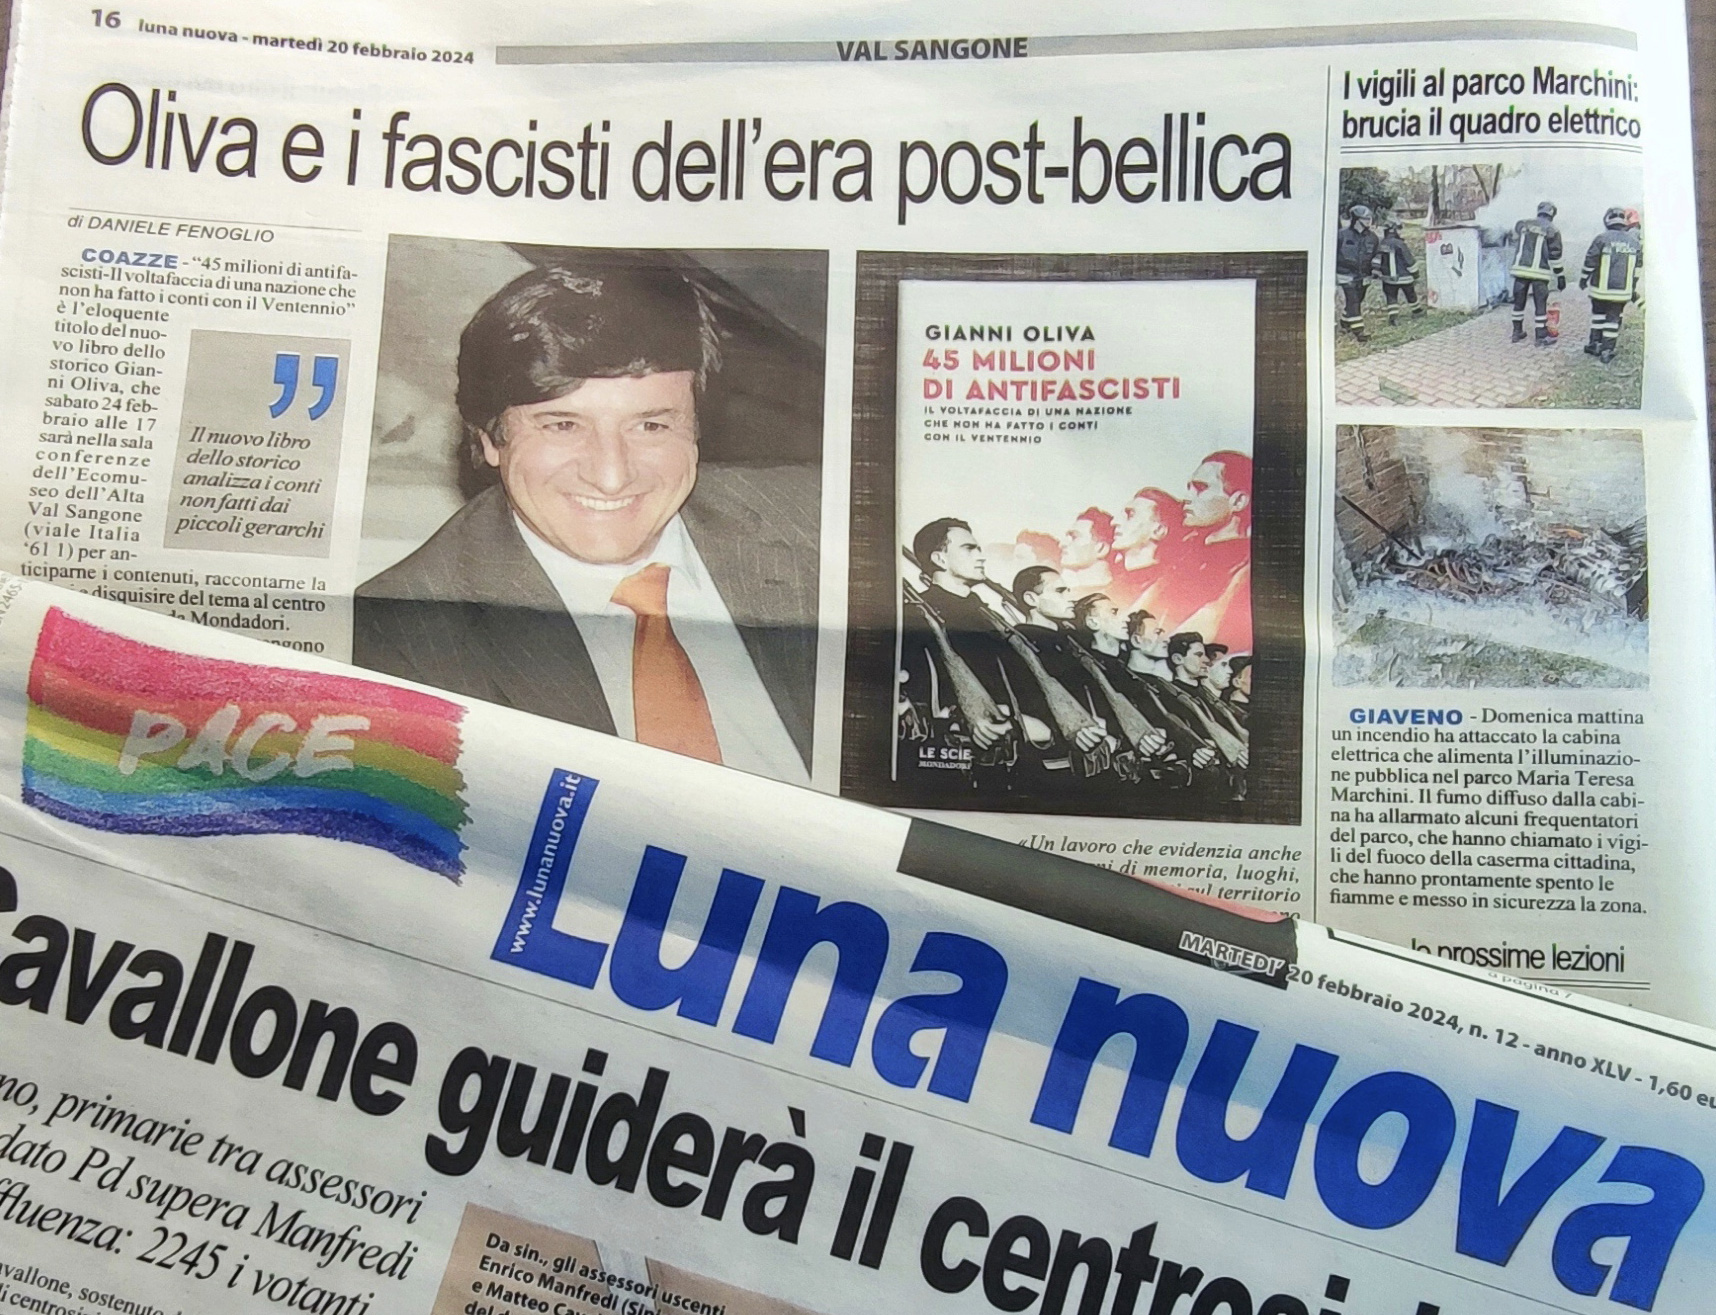 LUNA NUOVA: “Oliva e i fascisti dell’era post-bellica”